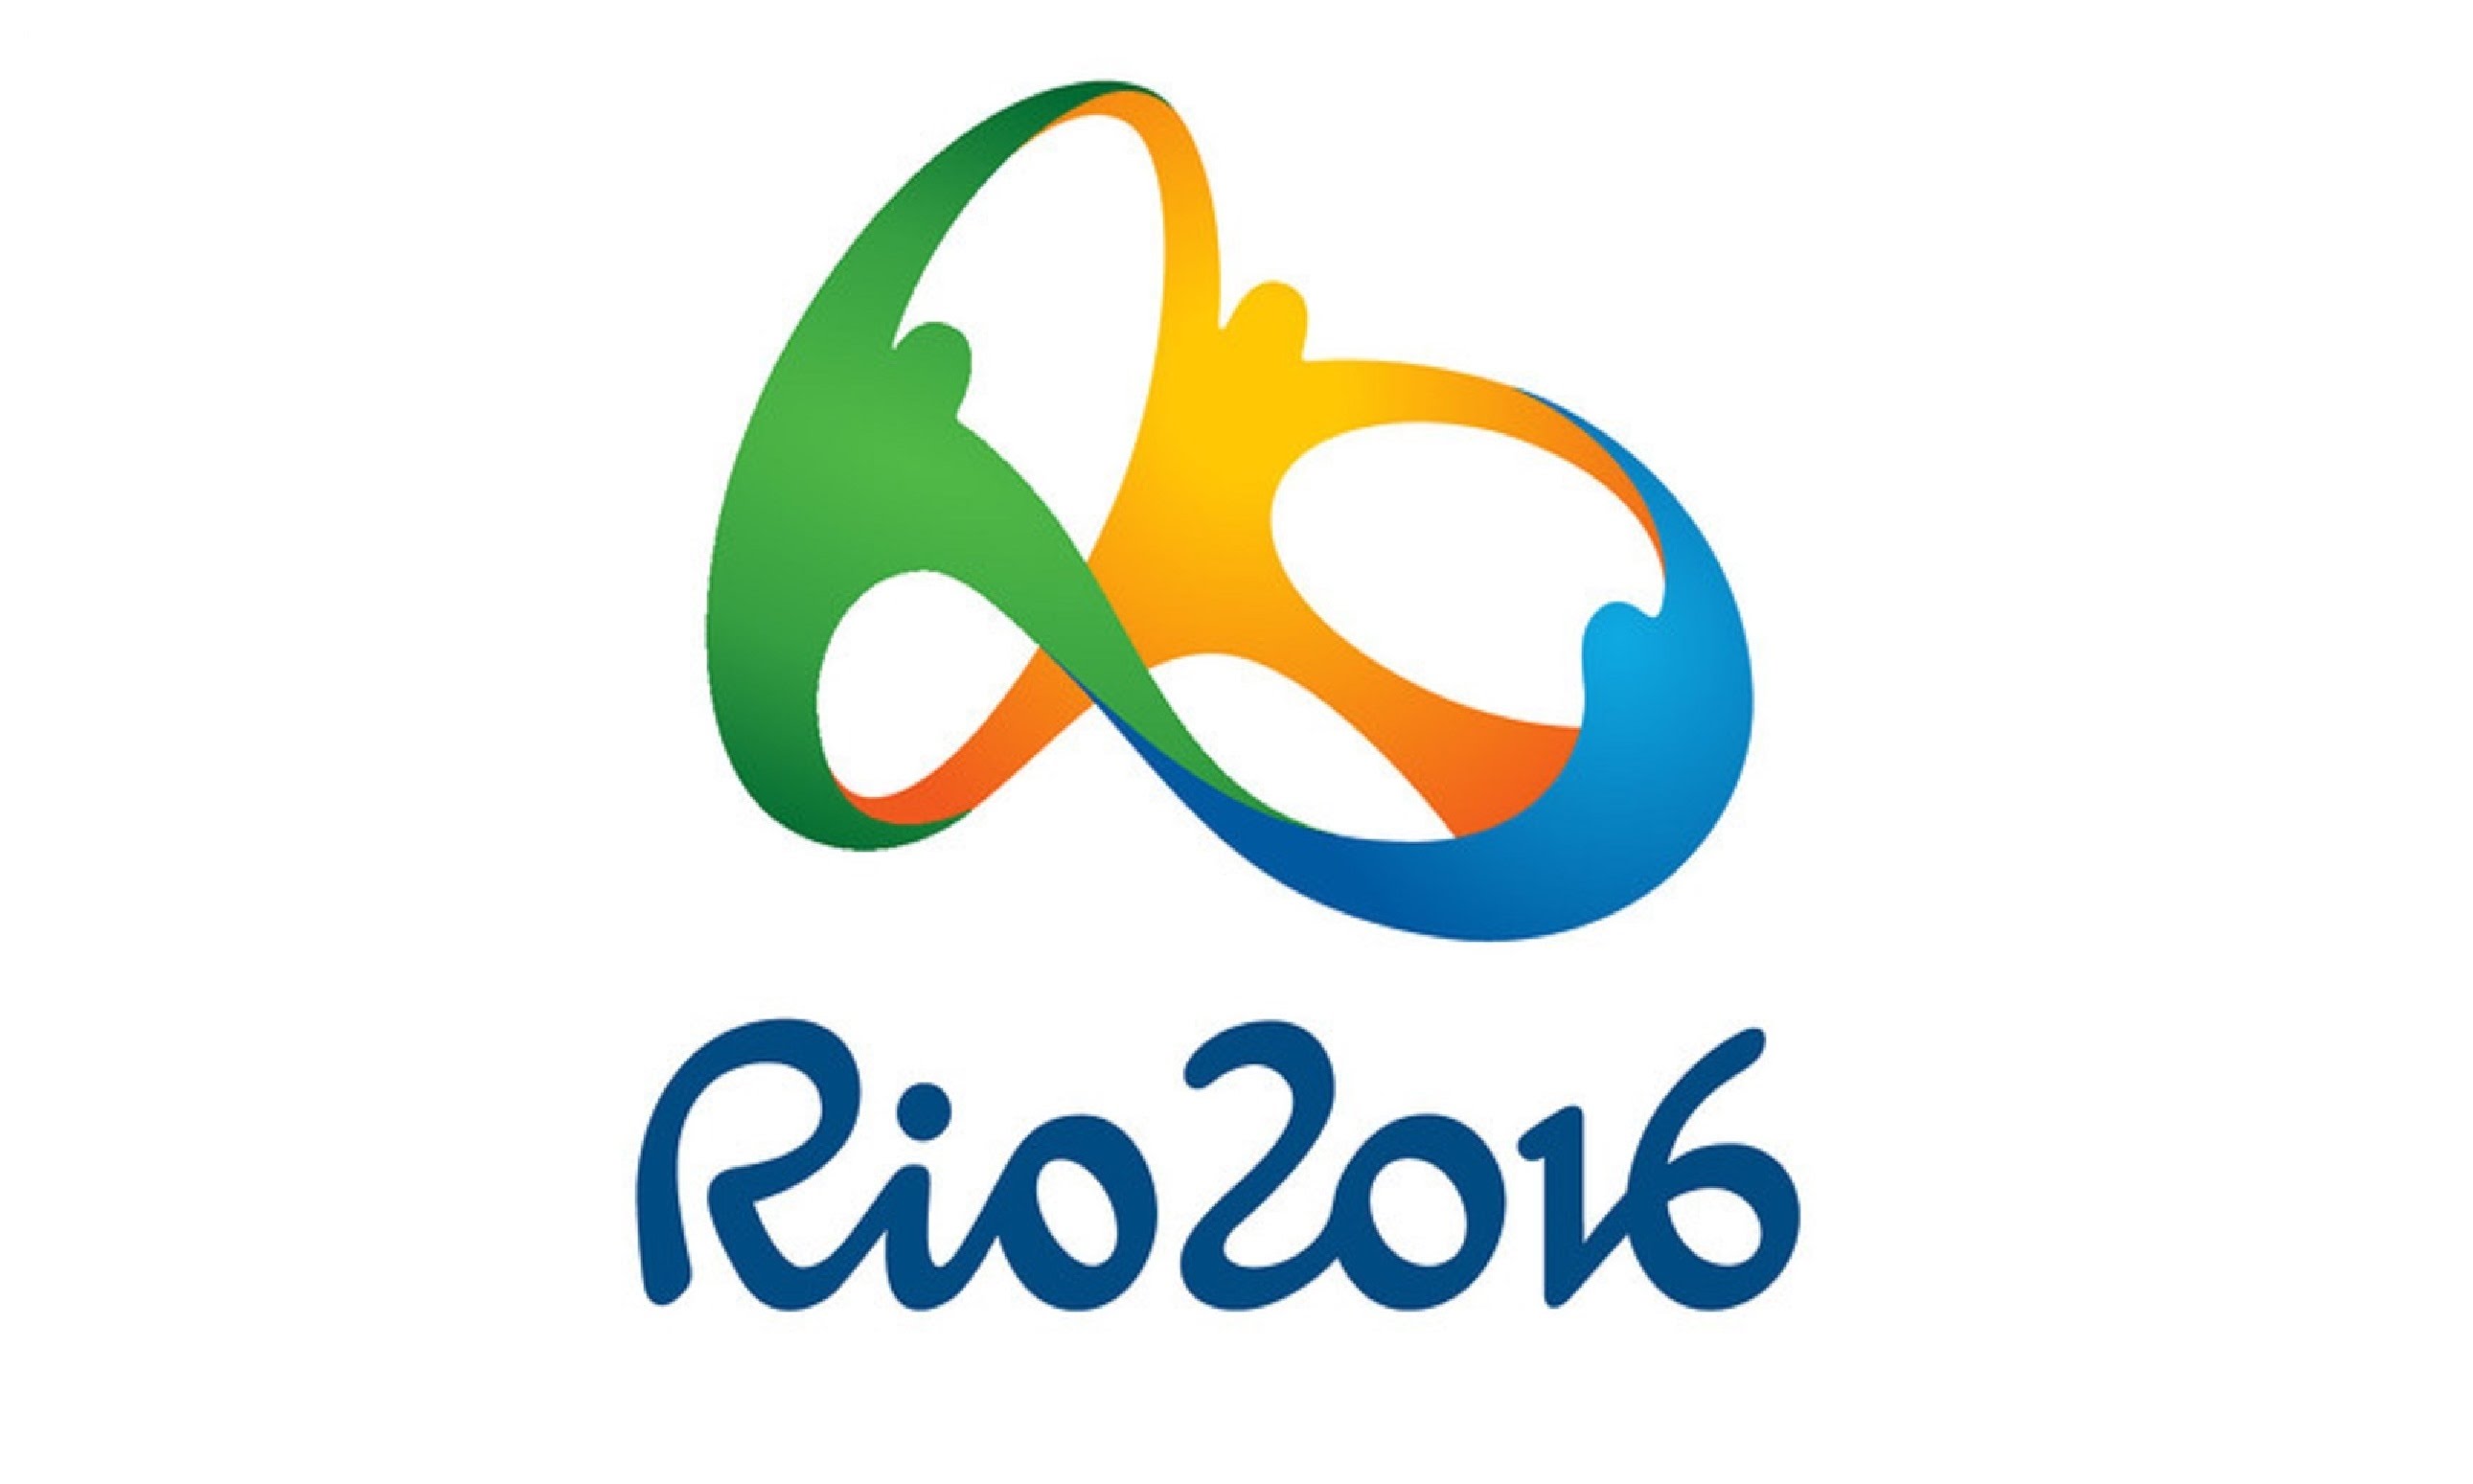 jeux olympiques de rio 2016